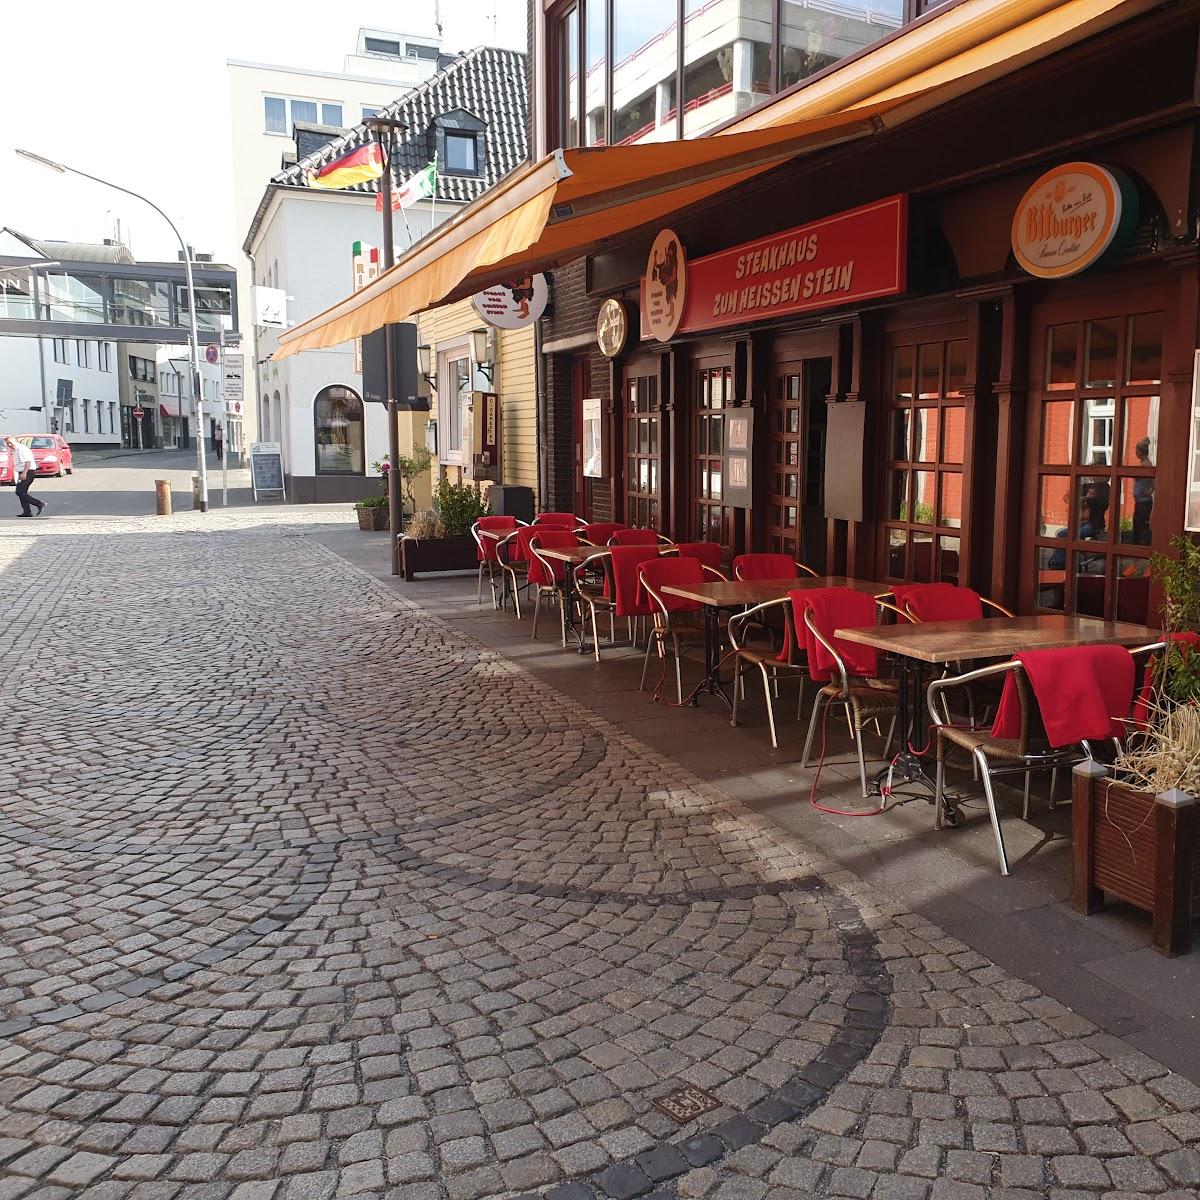 Restaurant "Steakhaus zum heißen Stein" in Mönchengladbach